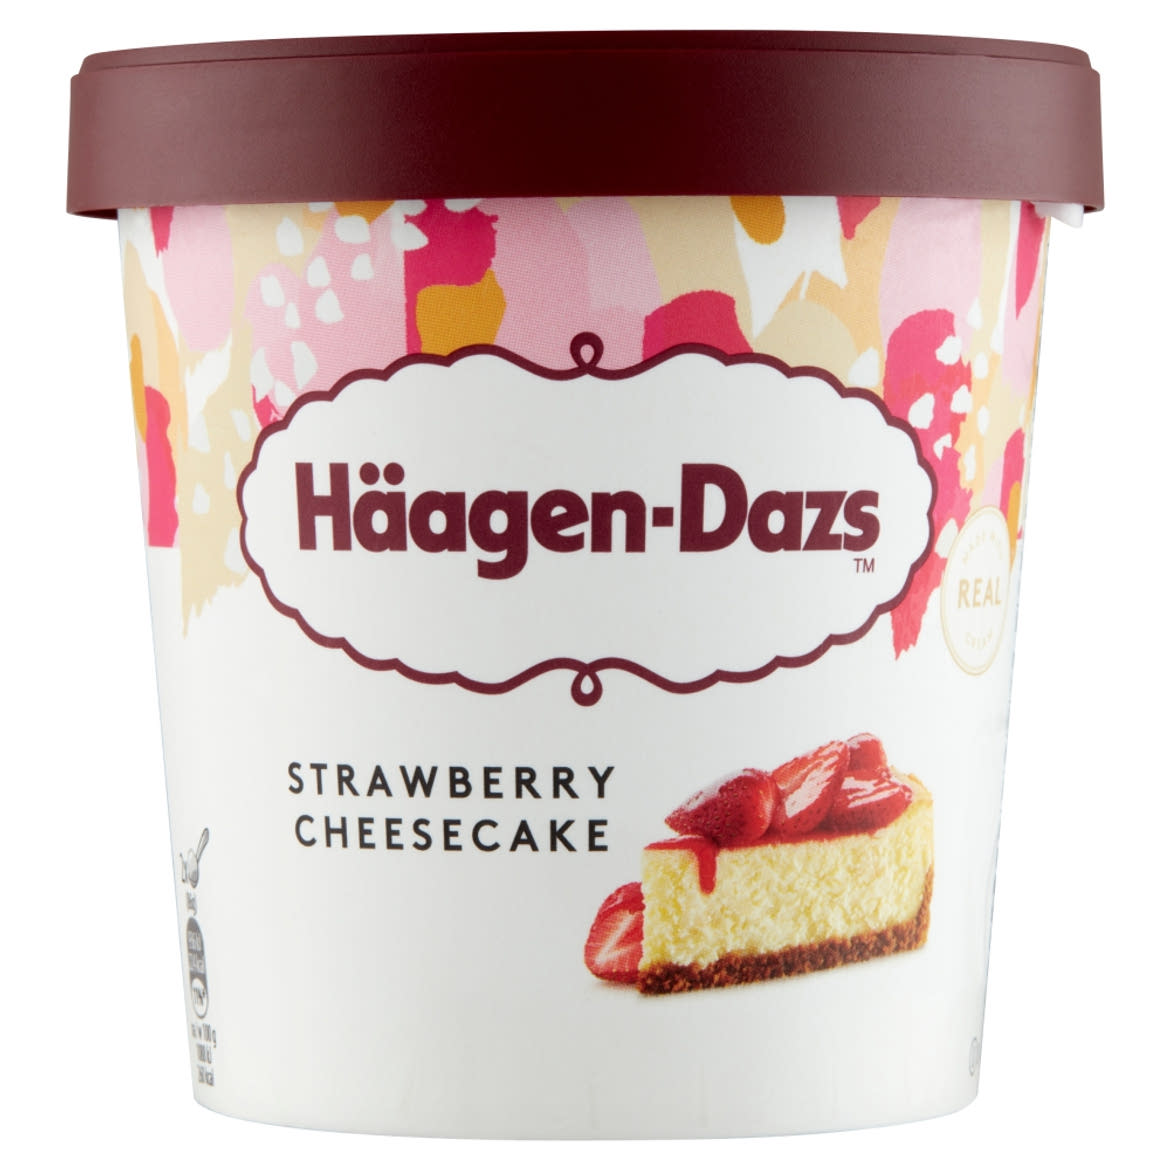 Häagen-Dazs sajttorta ízű jégkrém eper öntettel, keksz darabkákkal és lágy sajttal